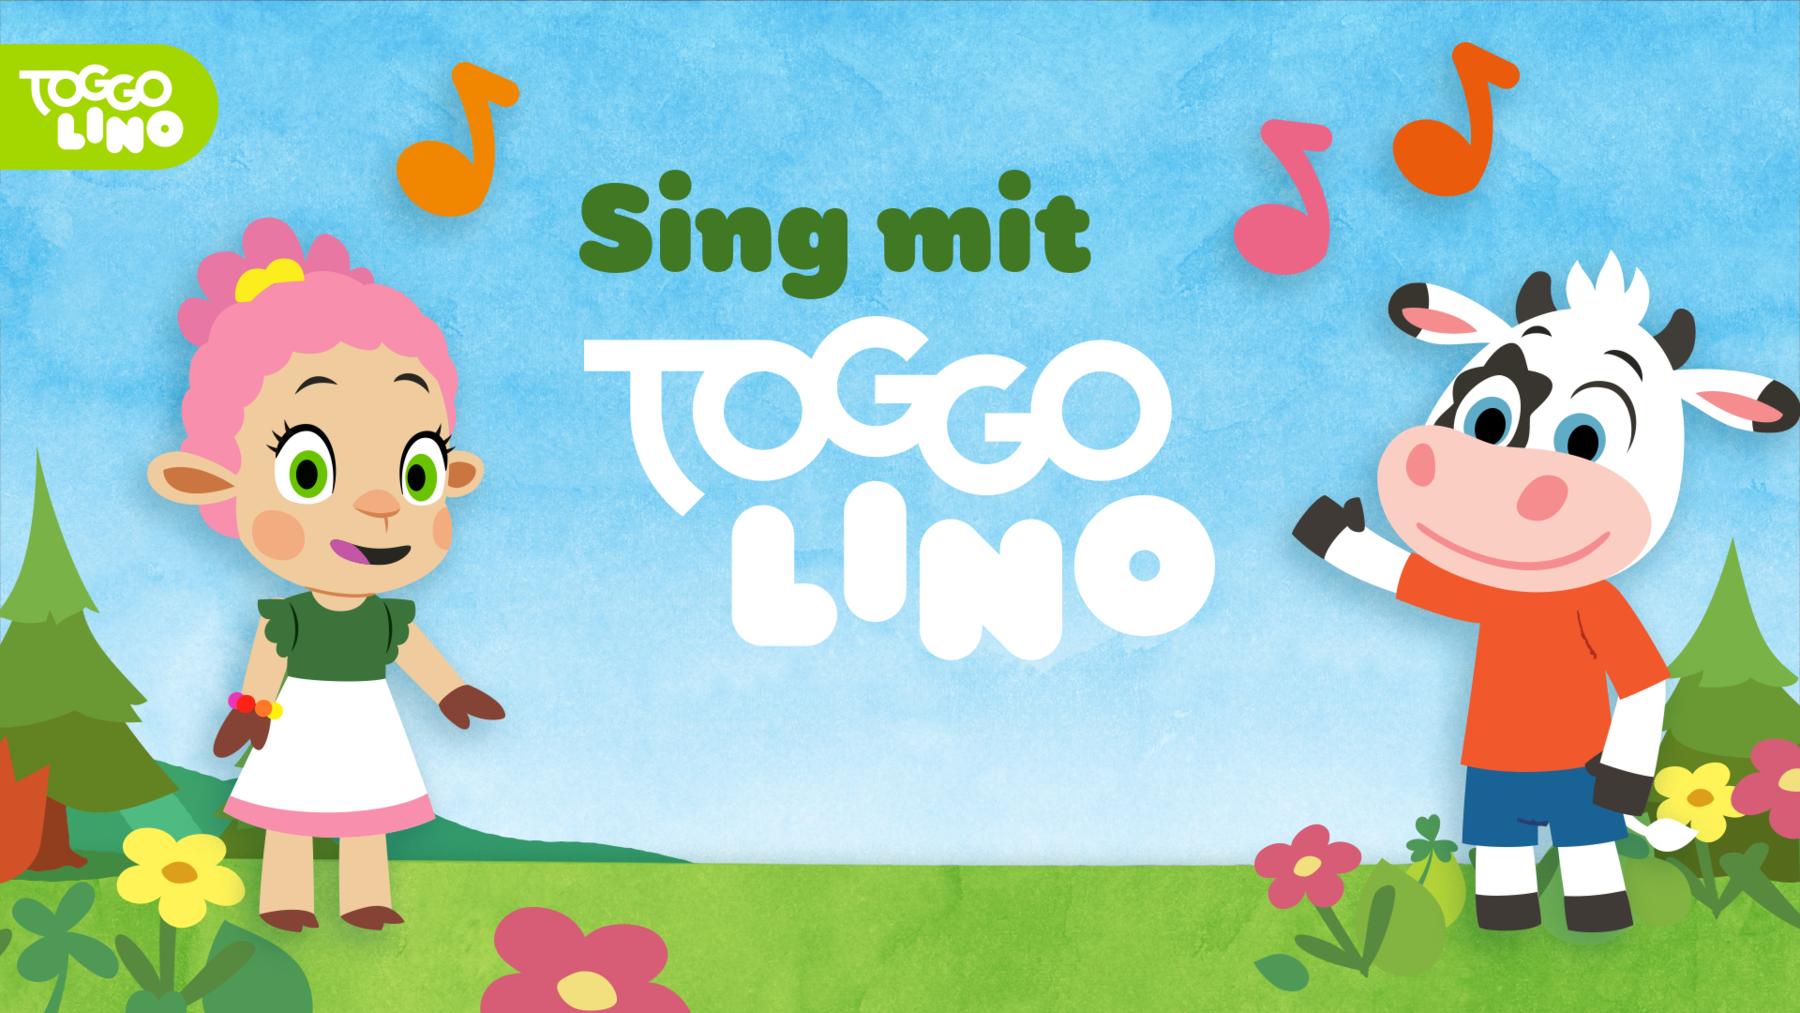 Sing mit Toggolino